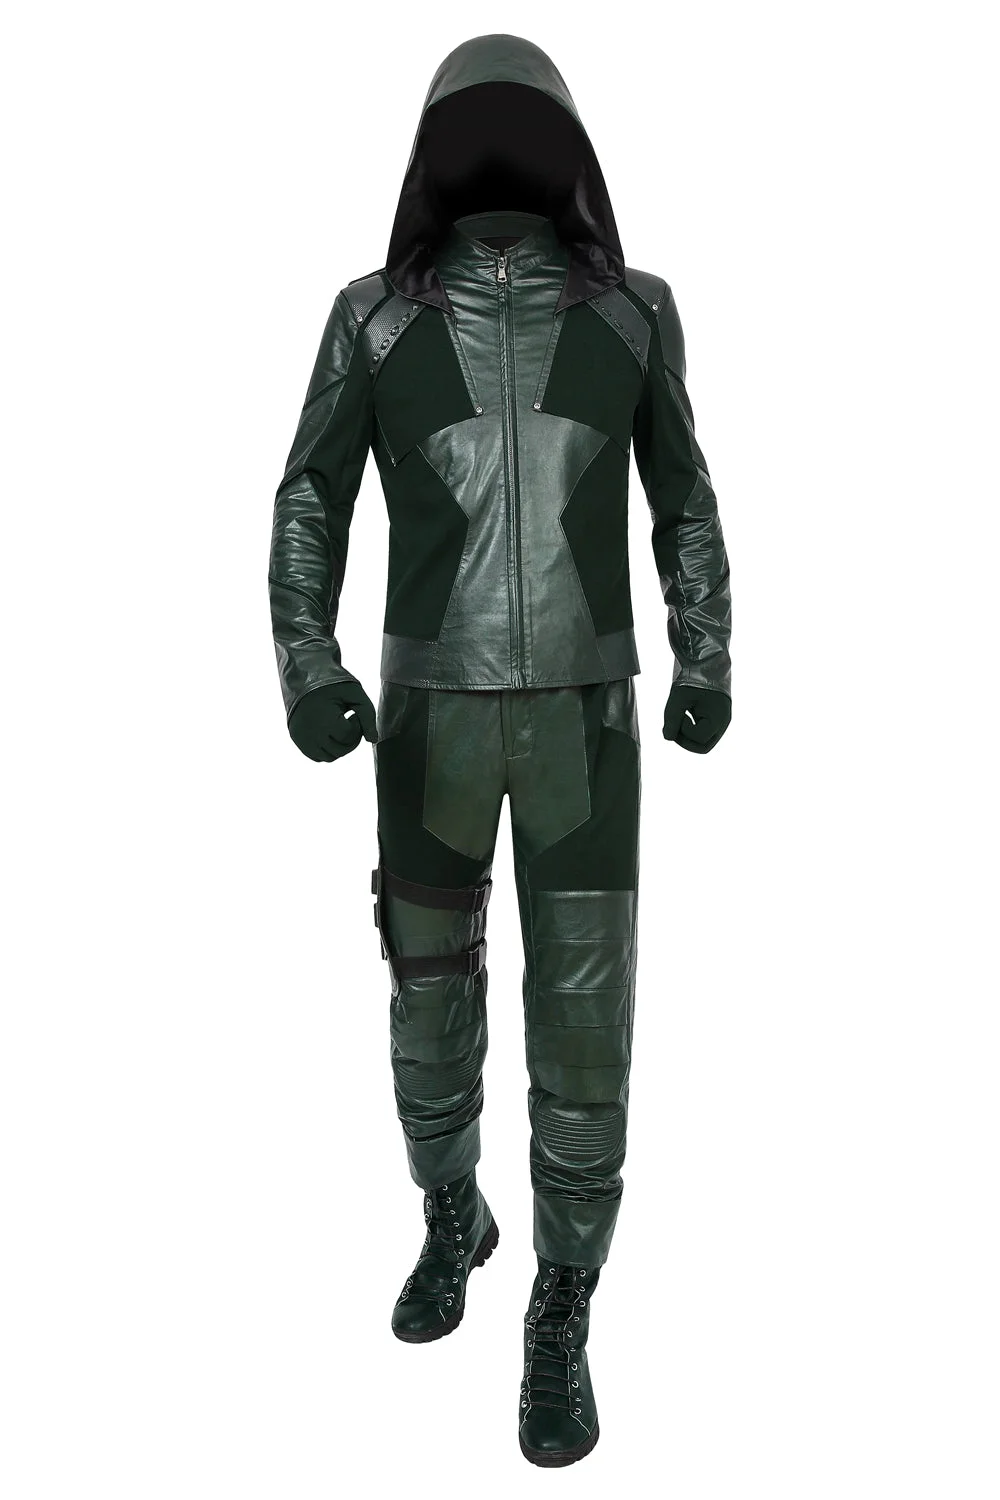 Green Arrow Costume Season 8 Oliver Queen Cosplay Suit